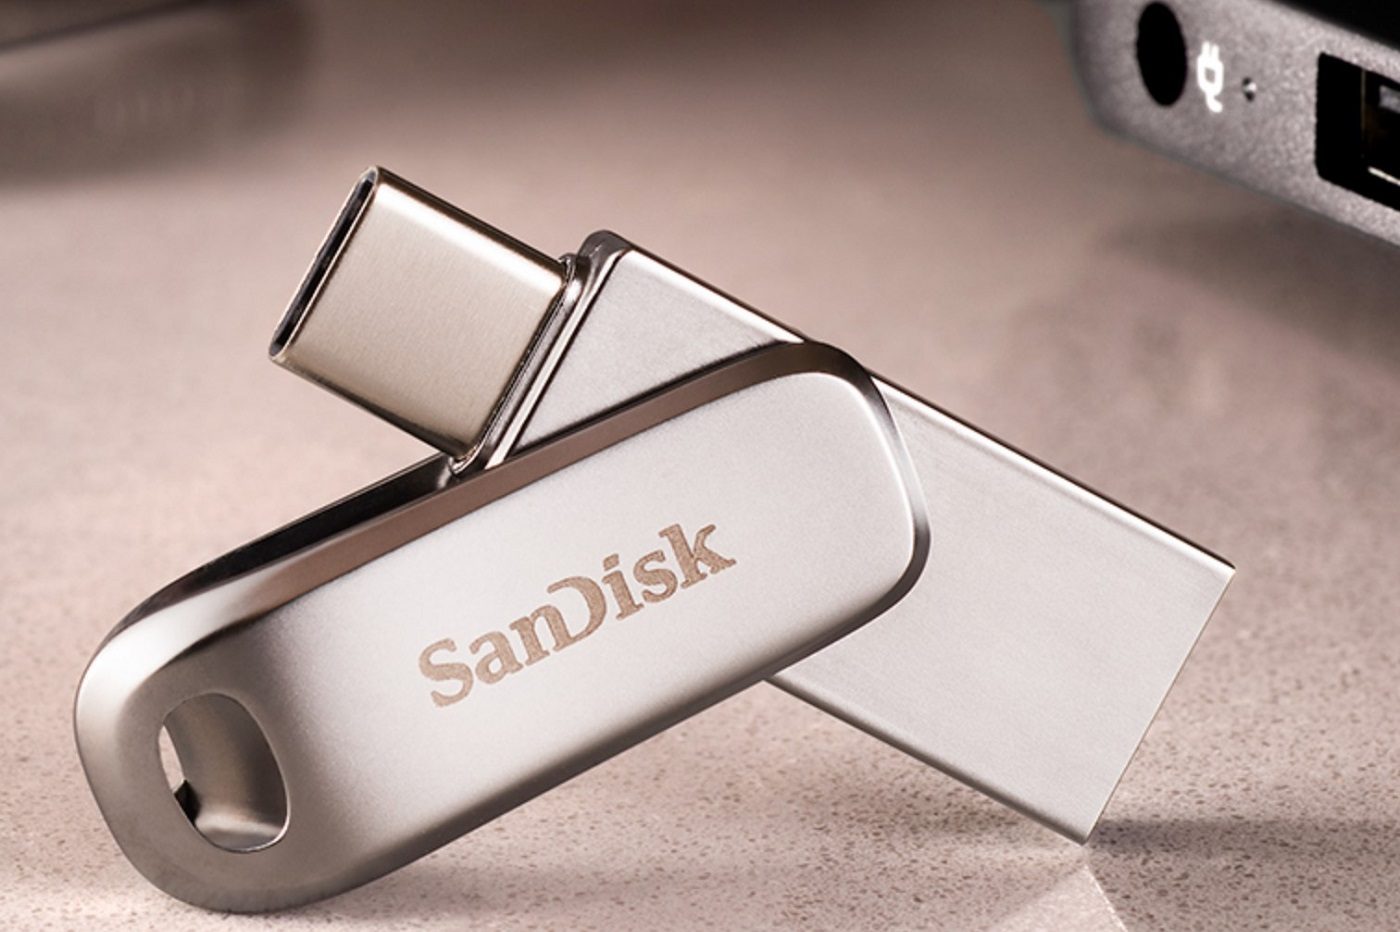 SanDisk Ultra Dual Drive Go 32 Go, Clé USB Type-C à double connectique